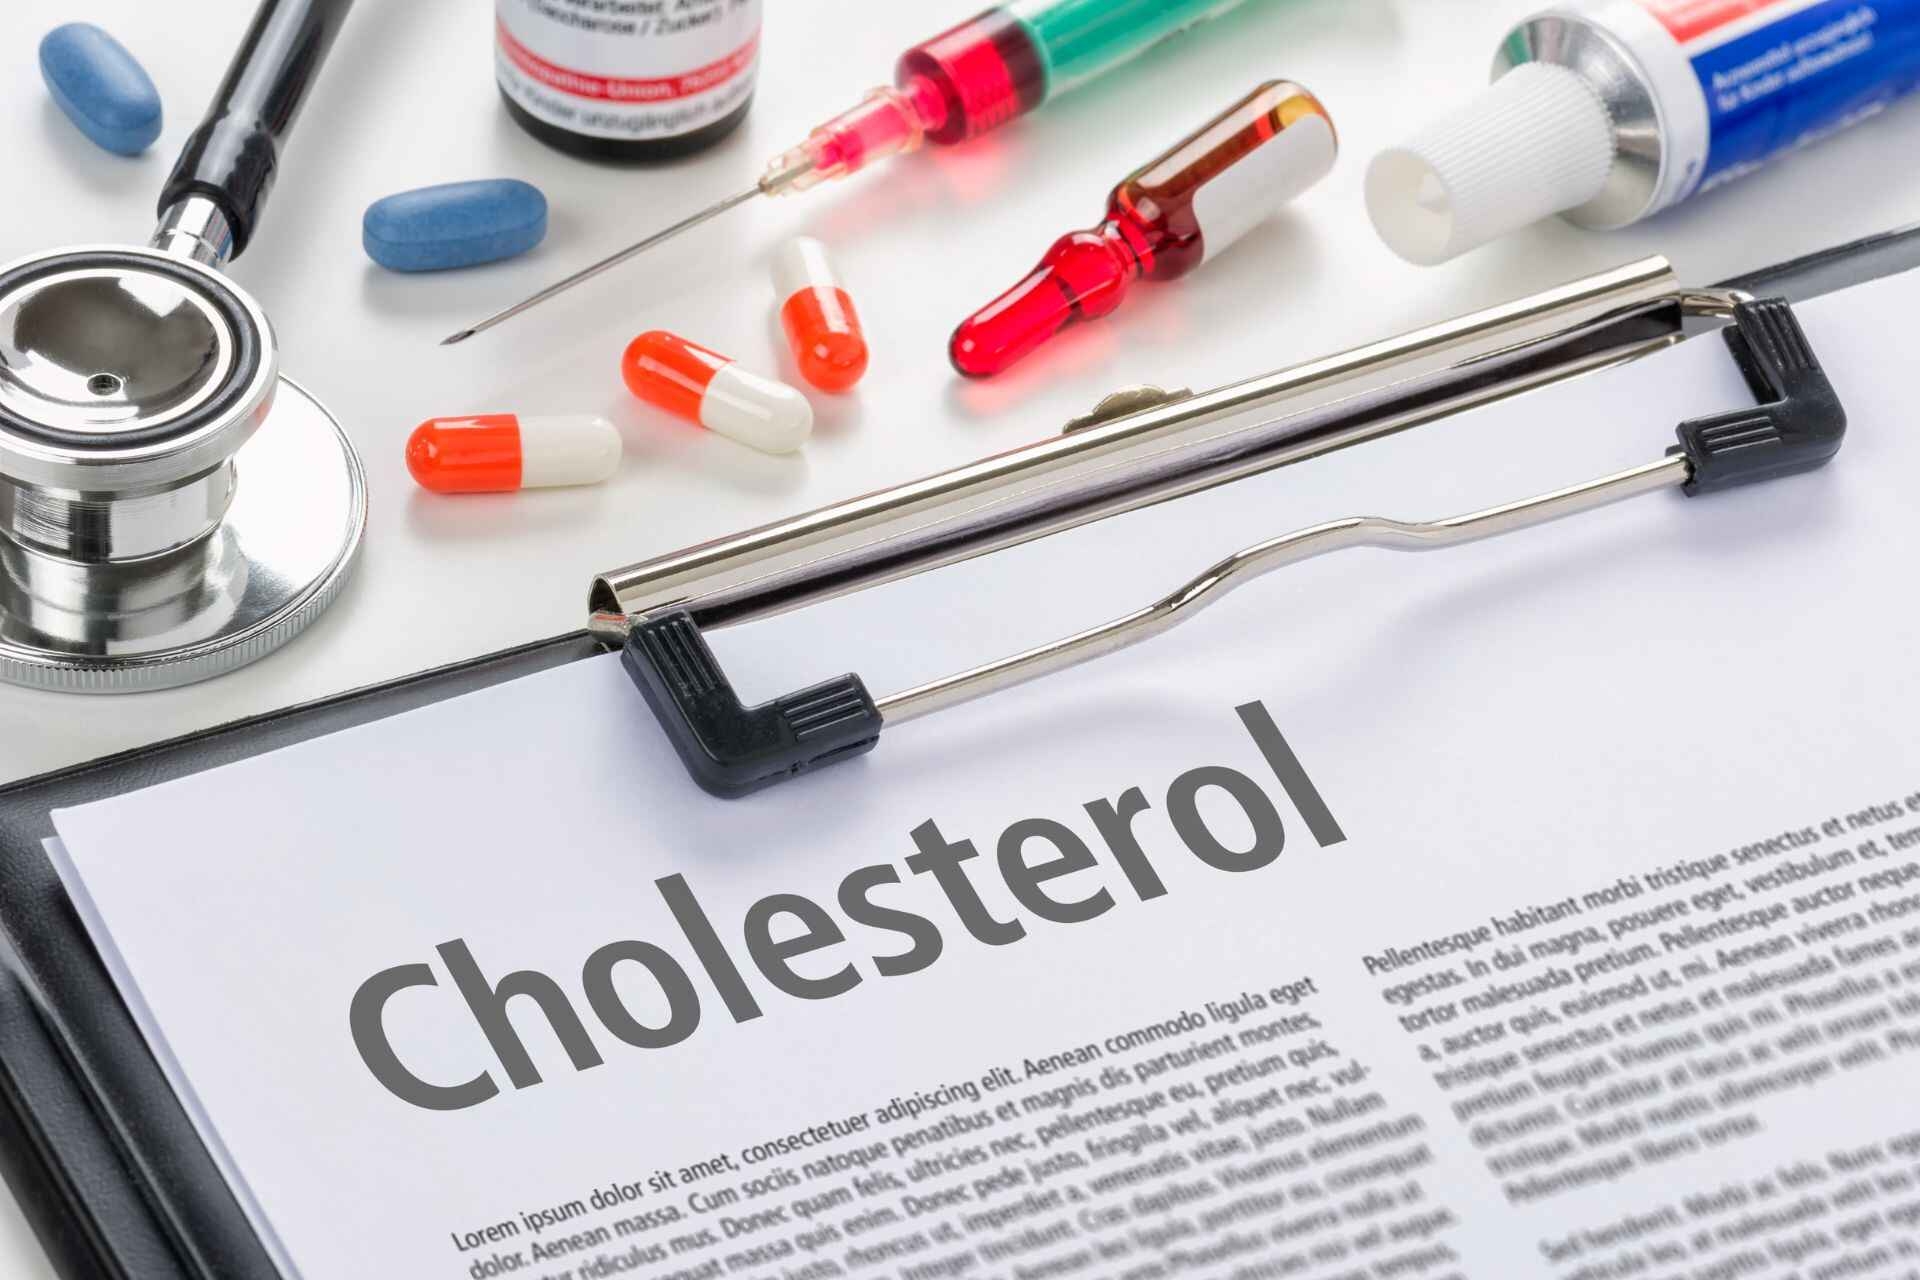 Colesterolo: il colesterolo alto è un problema molto comune